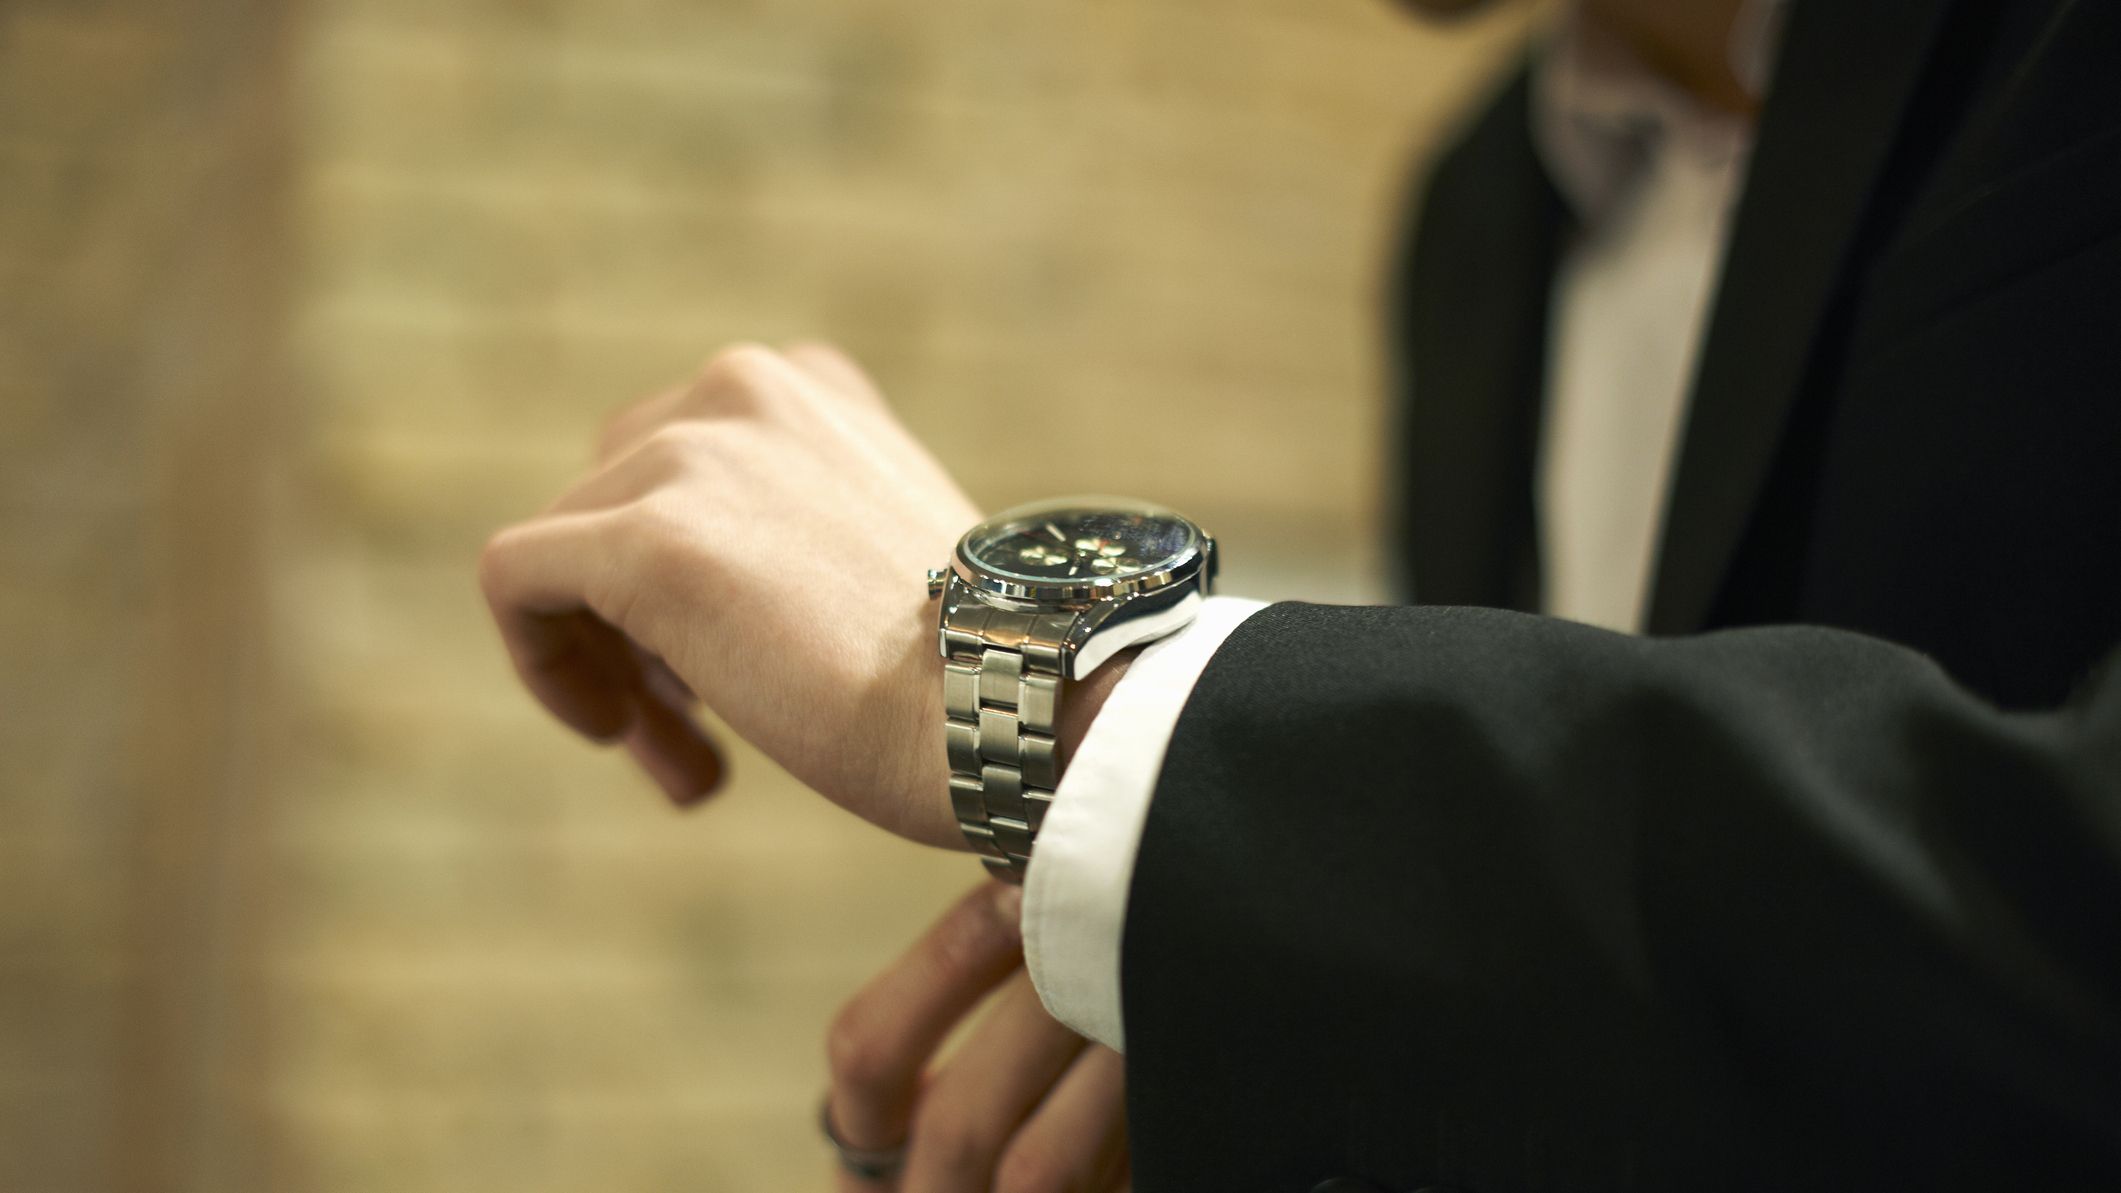 10 relojes clásicos de hombre que no pasan de moda